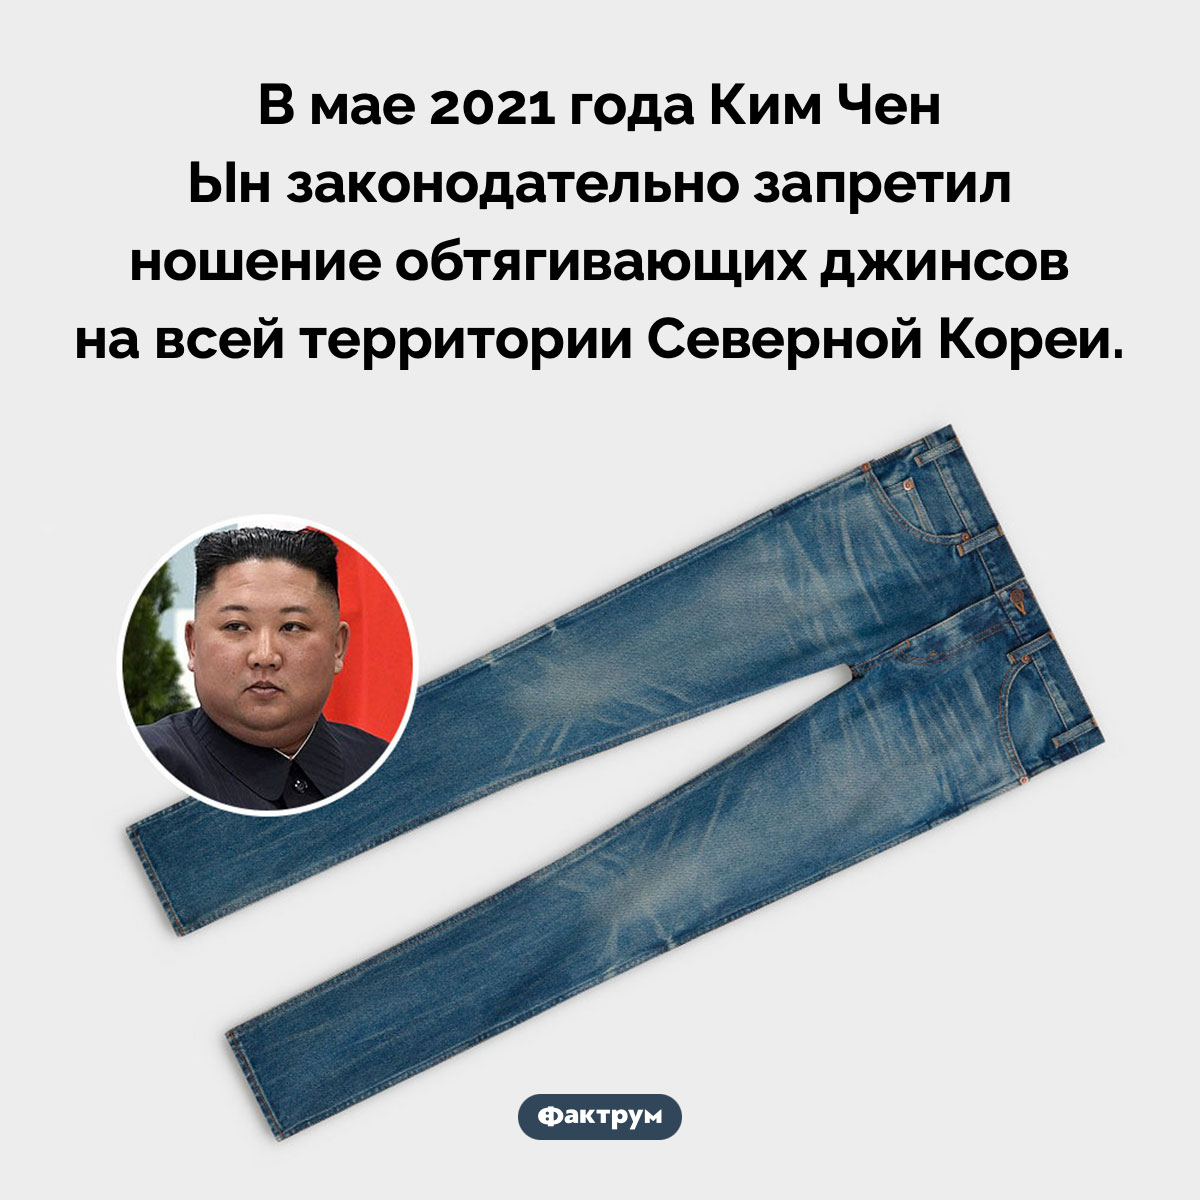 В Северной Корее нельзя ходить в узких джинсах. В мае 2021 года Ким Чен Ын законодательно запретил ношение обтягивающих джинсов на всей территории Северной Кореи.